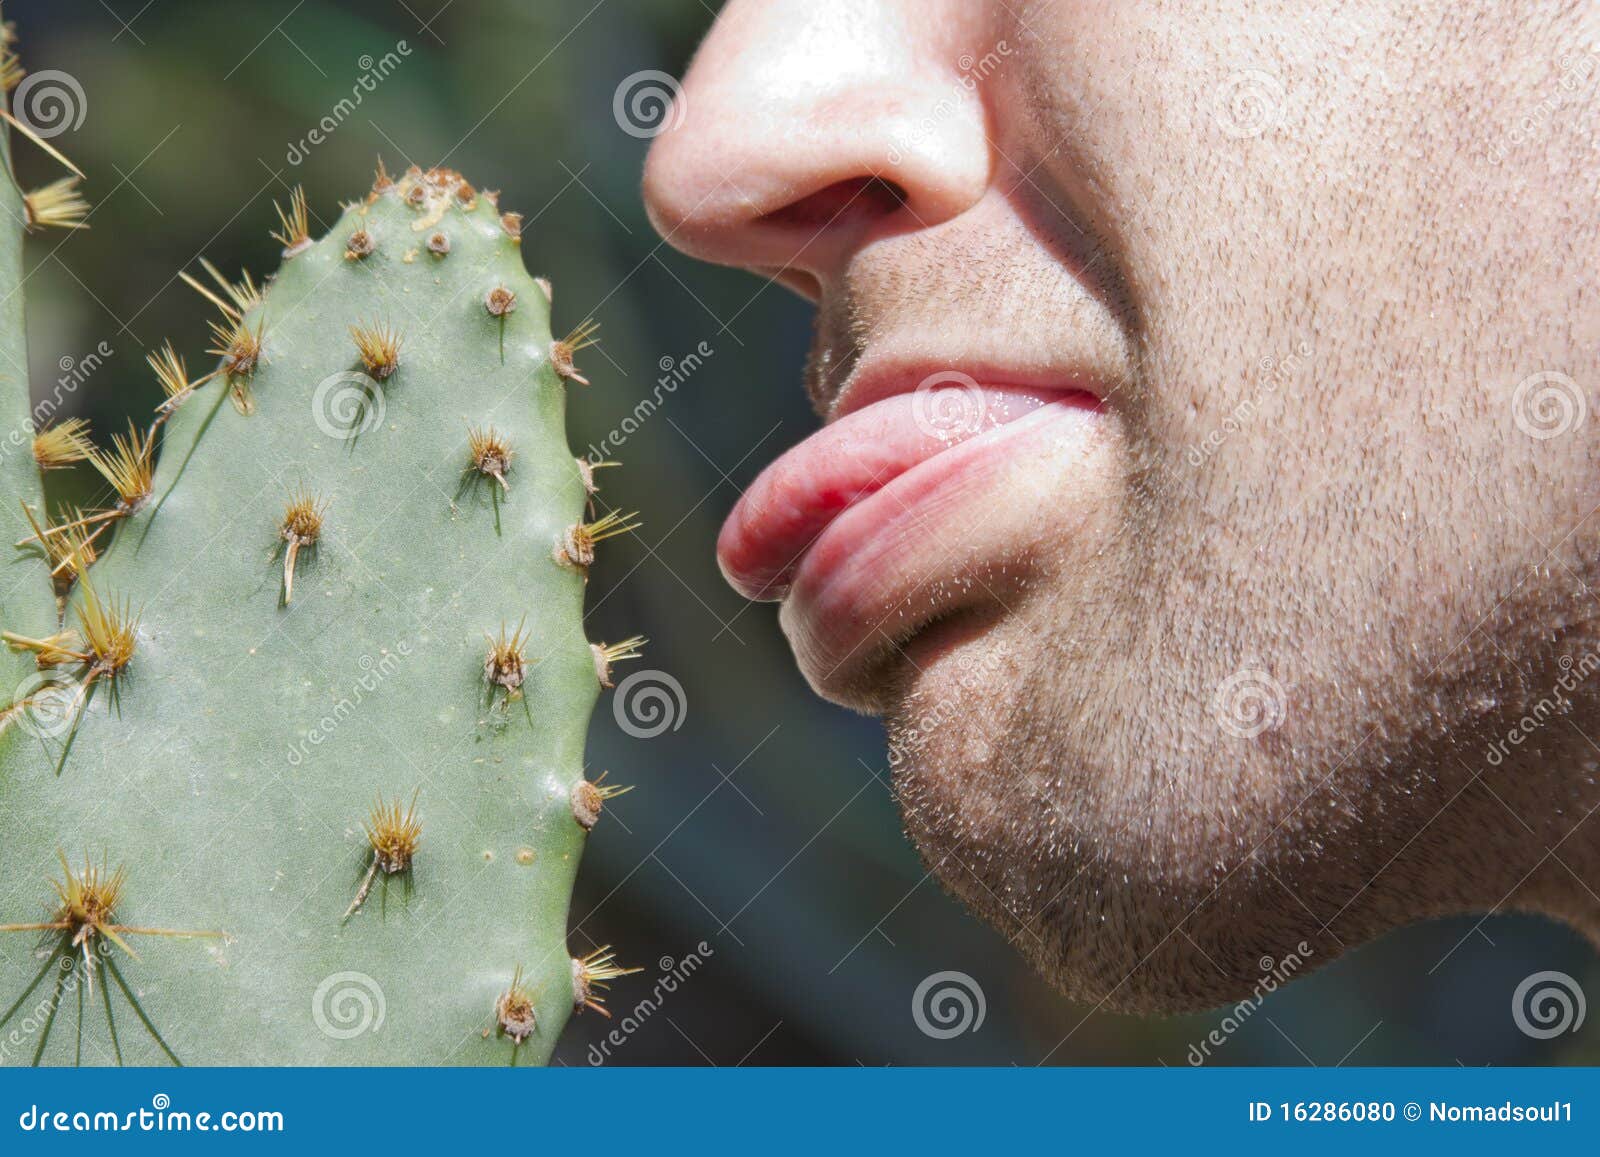 Cactus bite